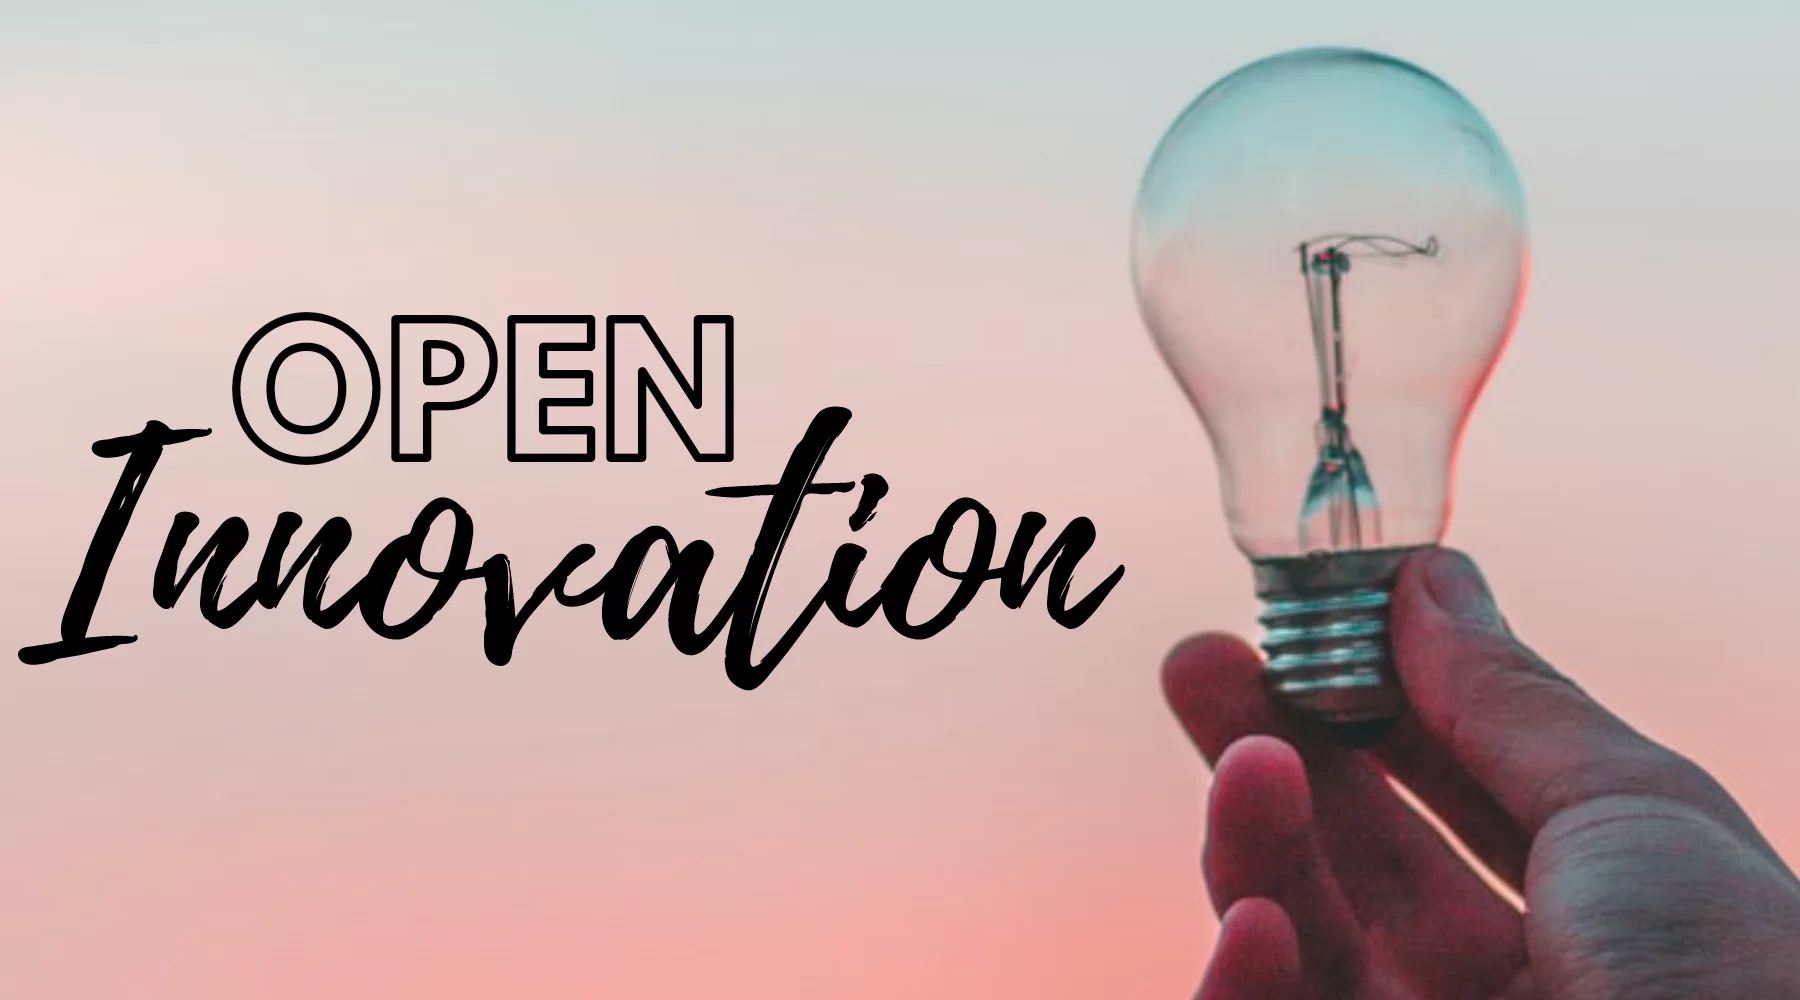 Icona Technology S.p.A. dhe Xplo S.r.l.: bashkëpunim në emër të Open Innovation për lançimin e "Servicely for Service Hub" në treg